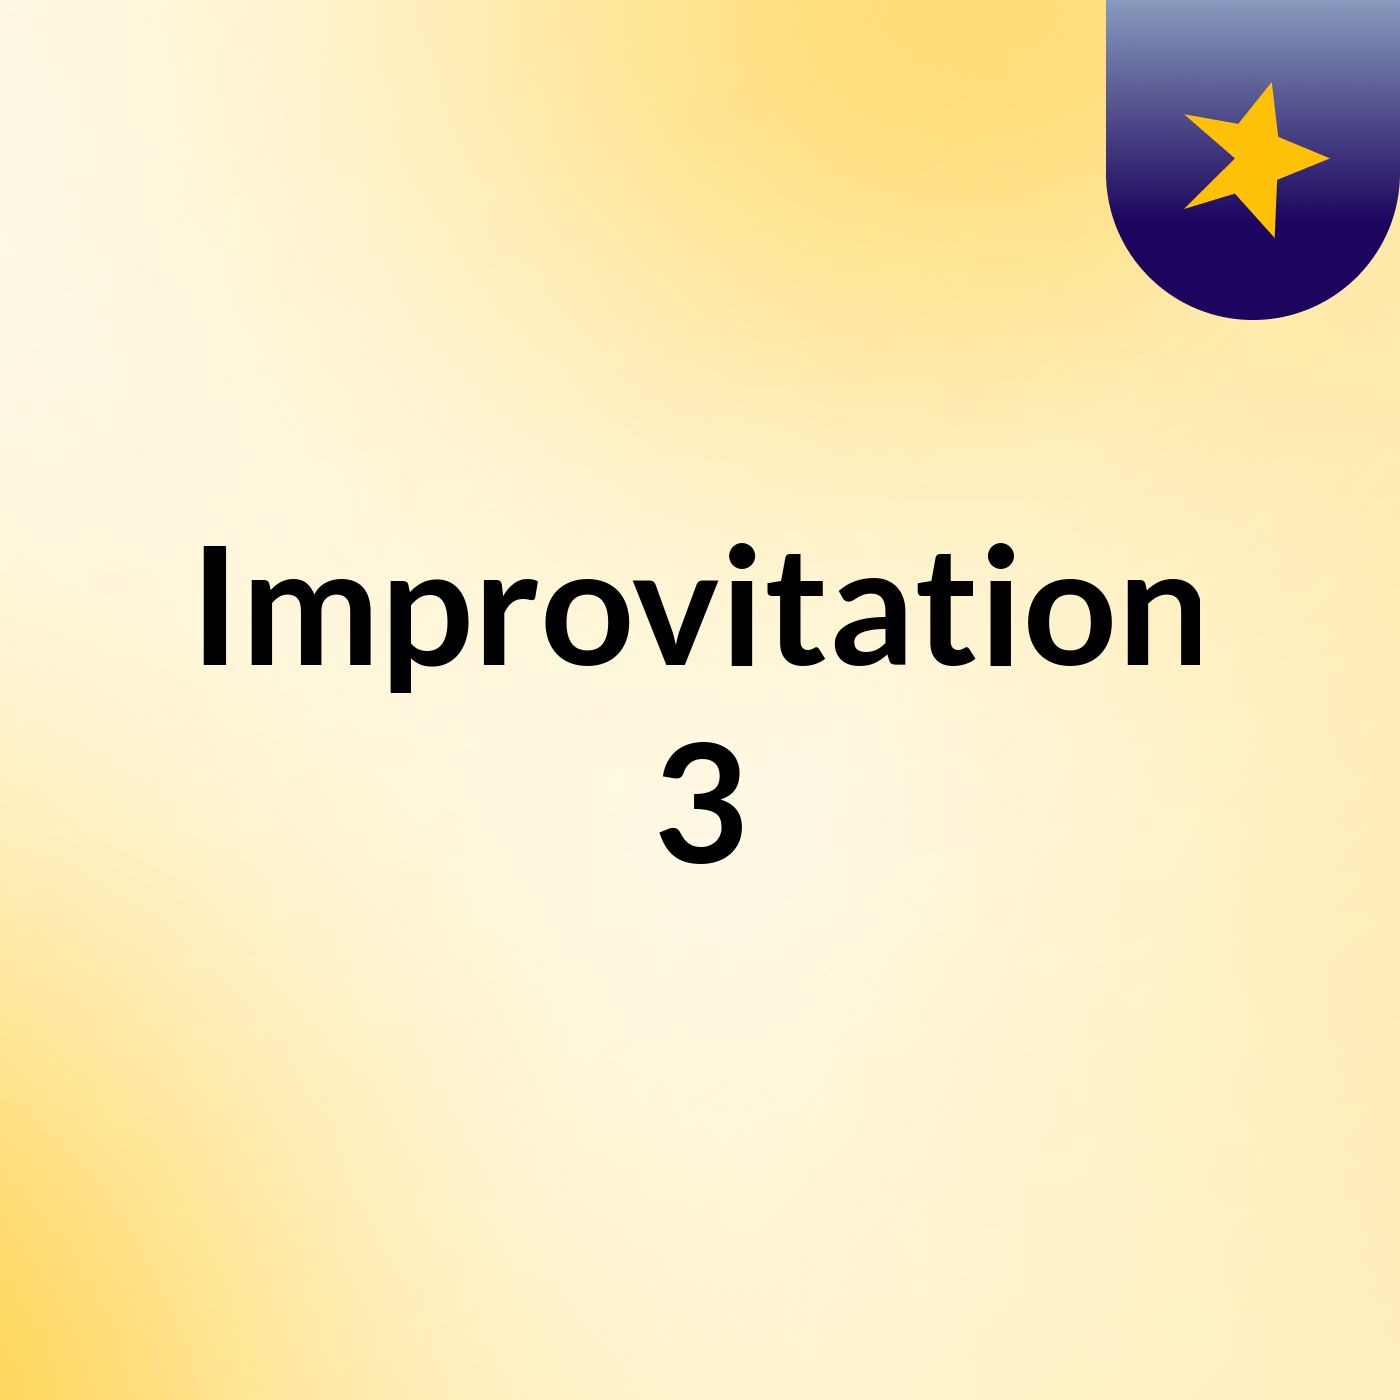 Episodio 2 - Improvitation 3